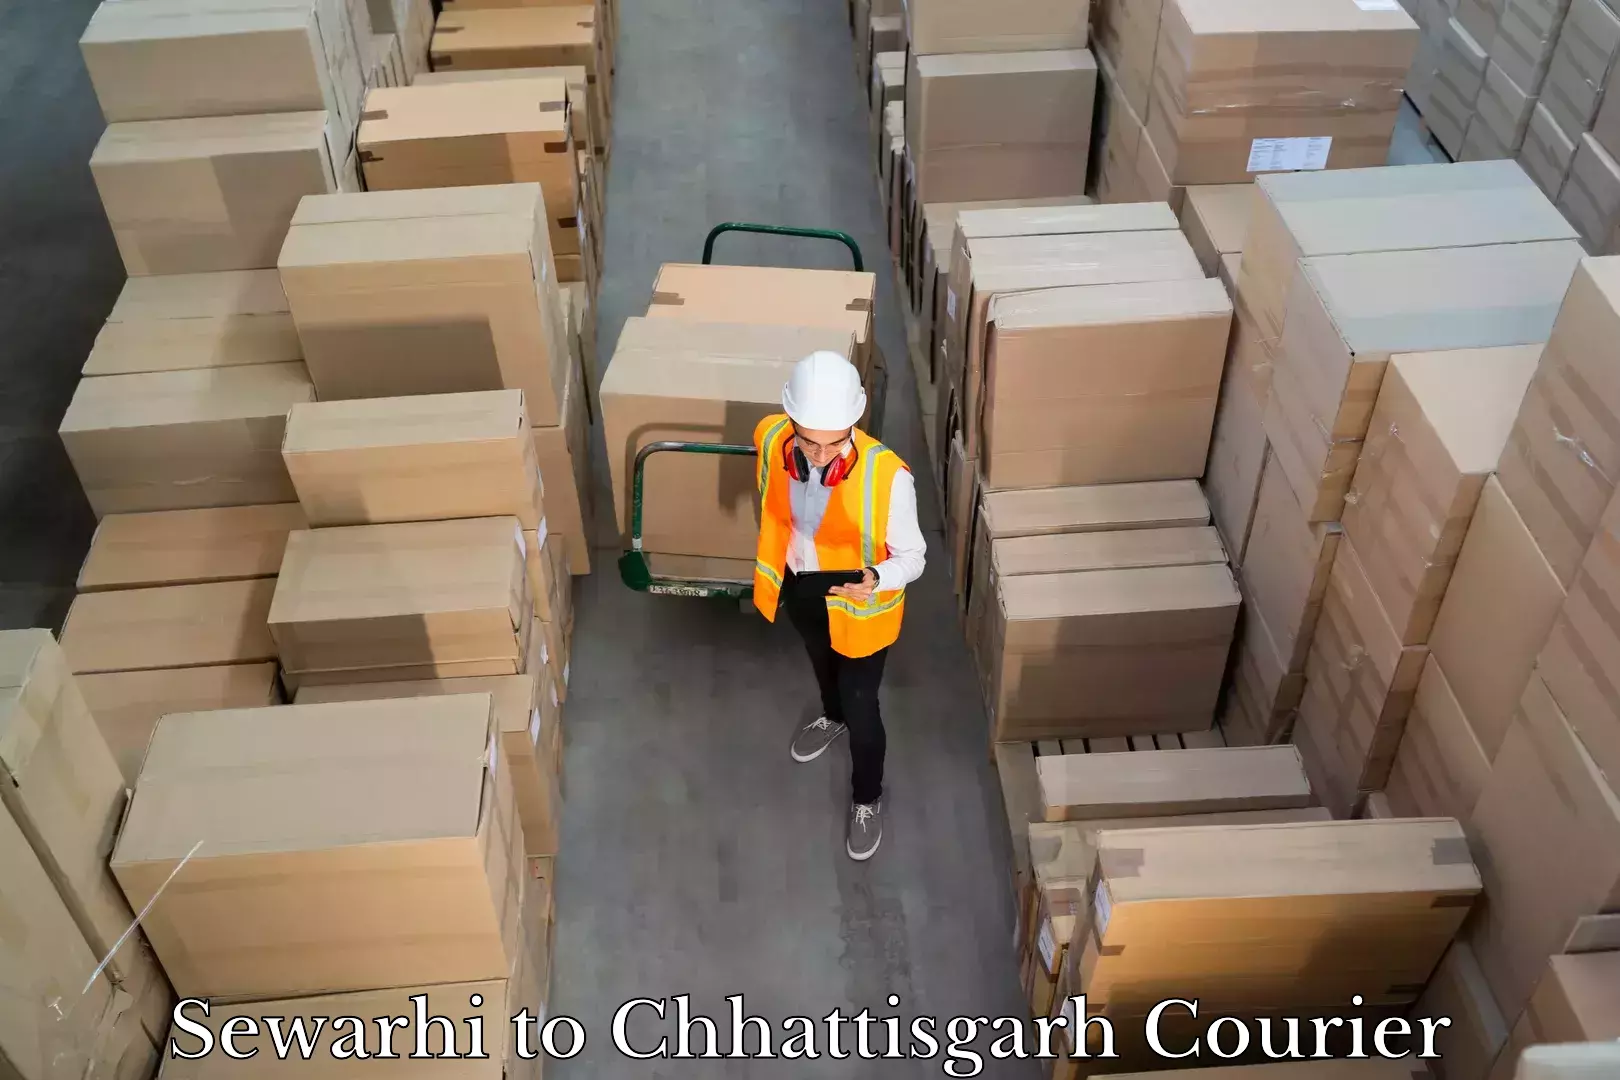 Luggage shipment specialists Sewarhi to Pratappur